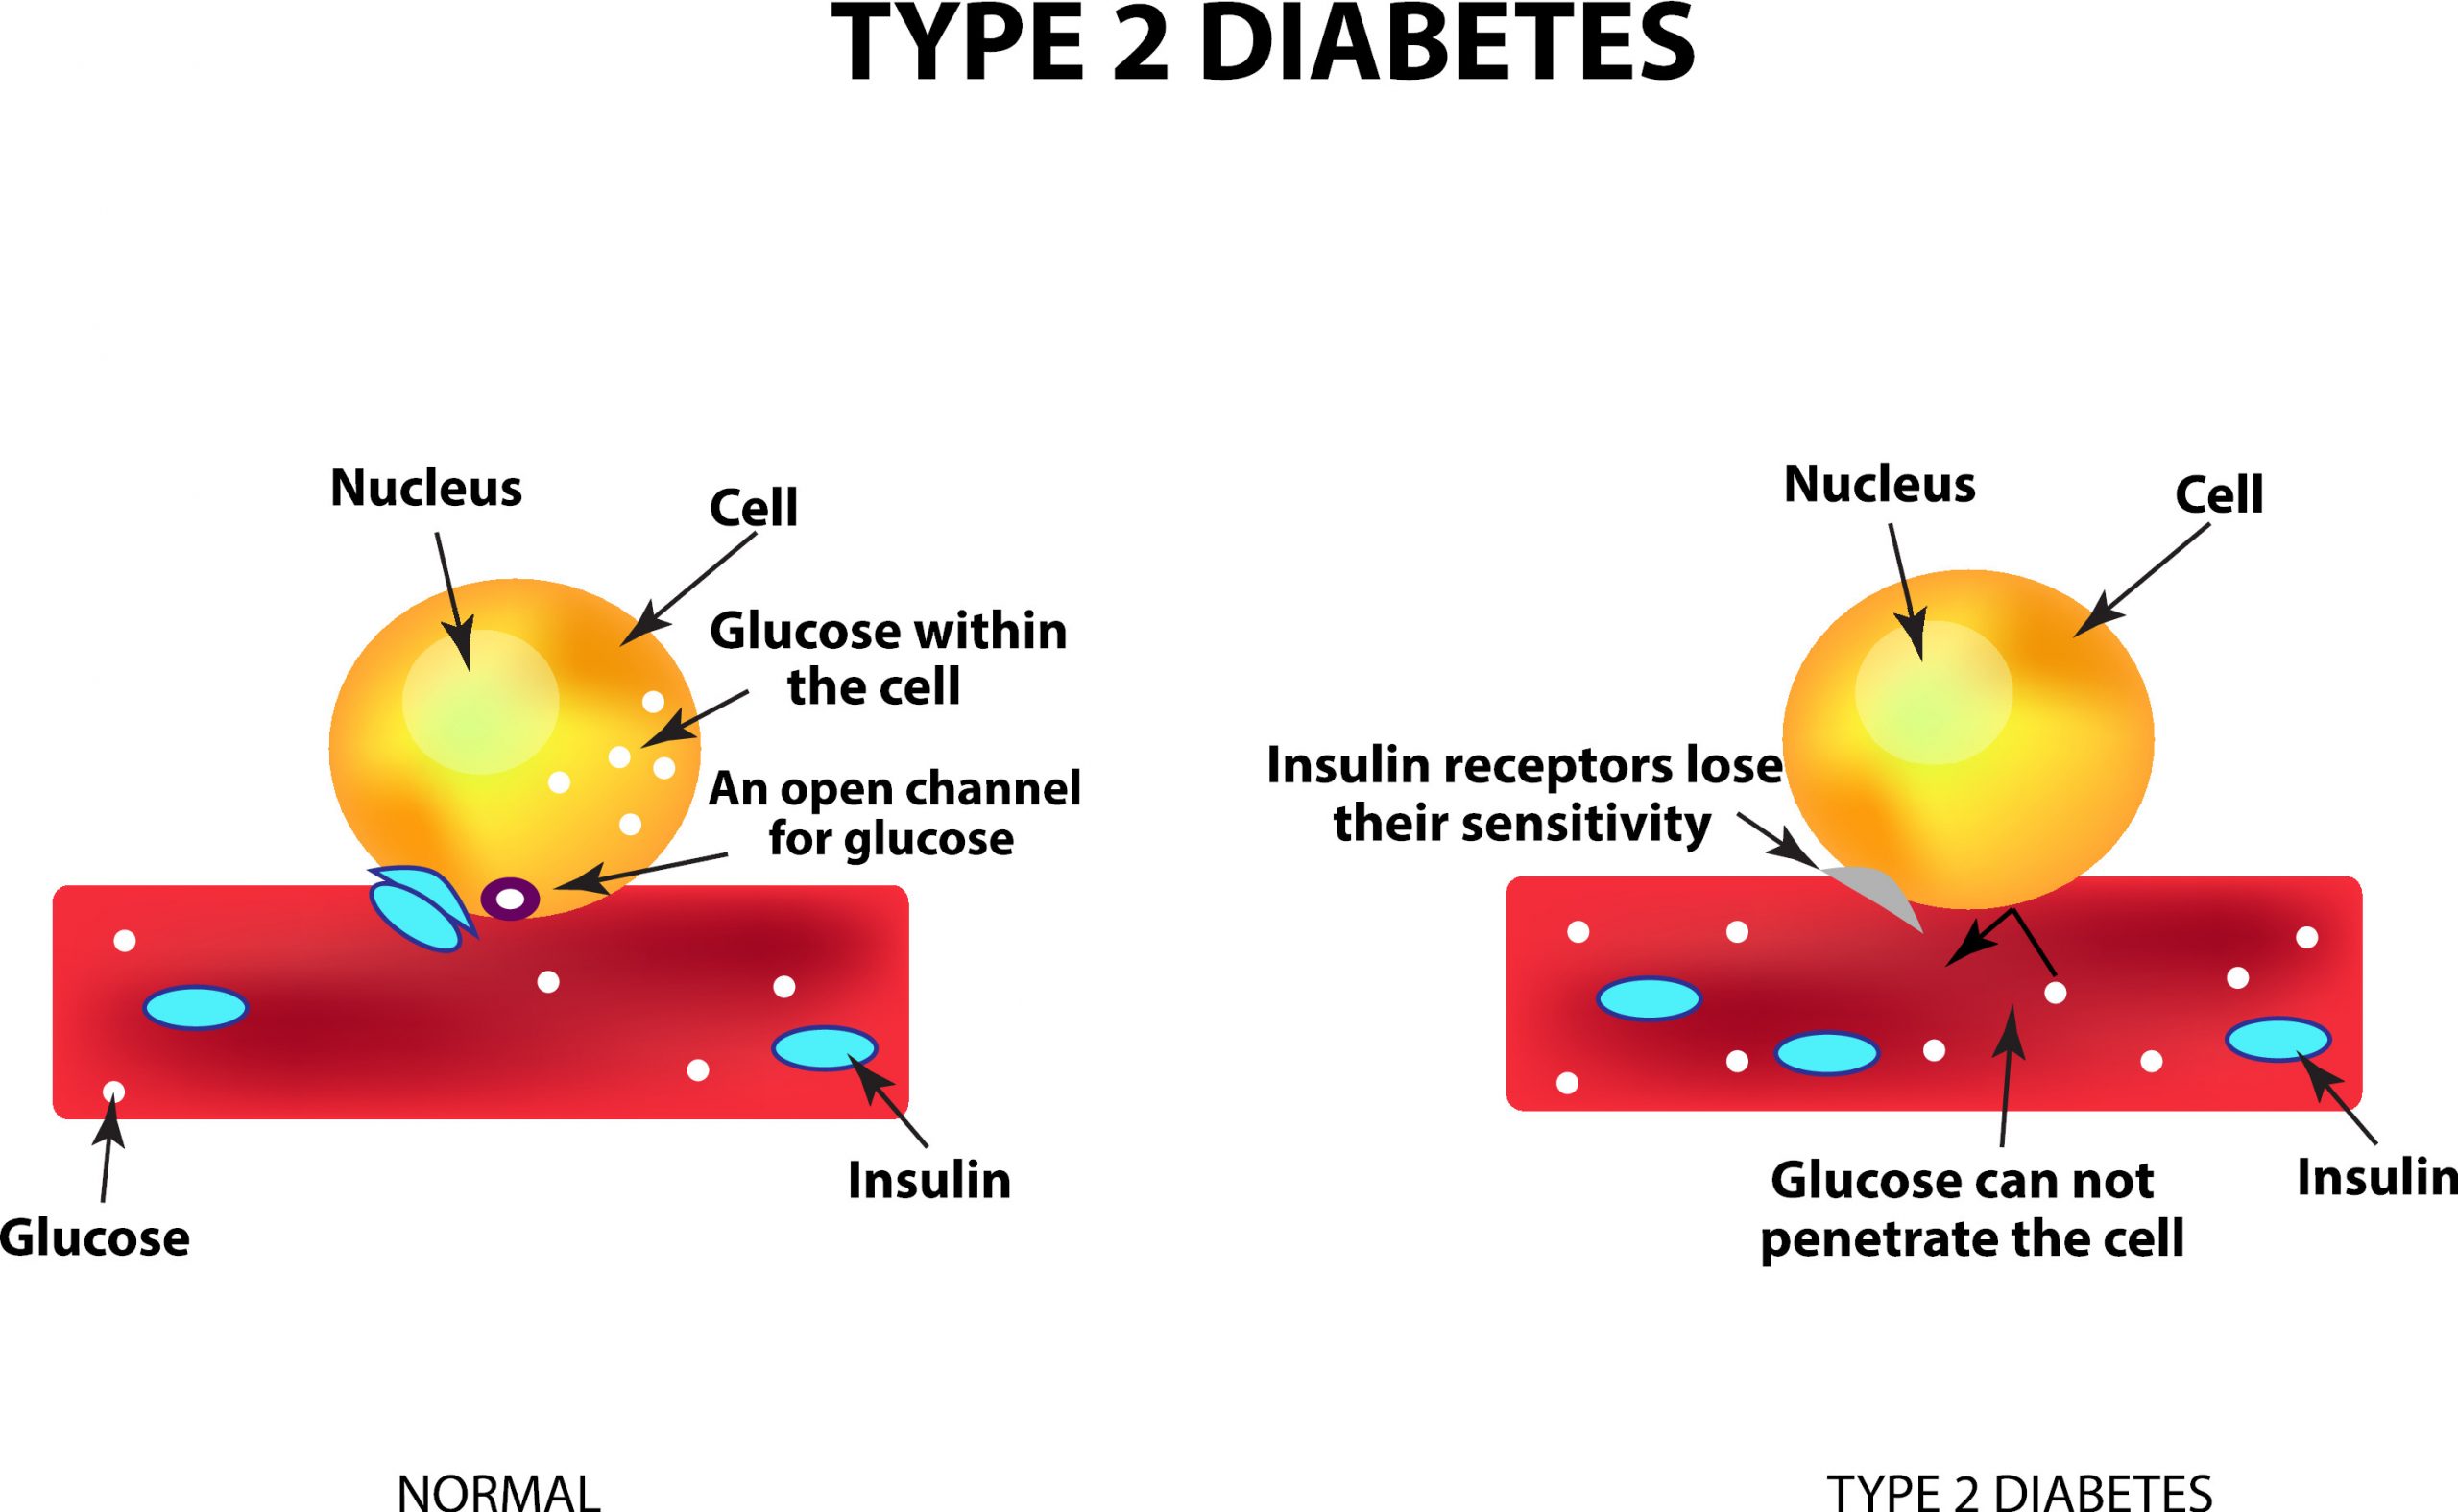 Ved diabetes type 2 vil insulinet miste sin effekt, noe som fører til overproduksjon og høyt blodsukker.